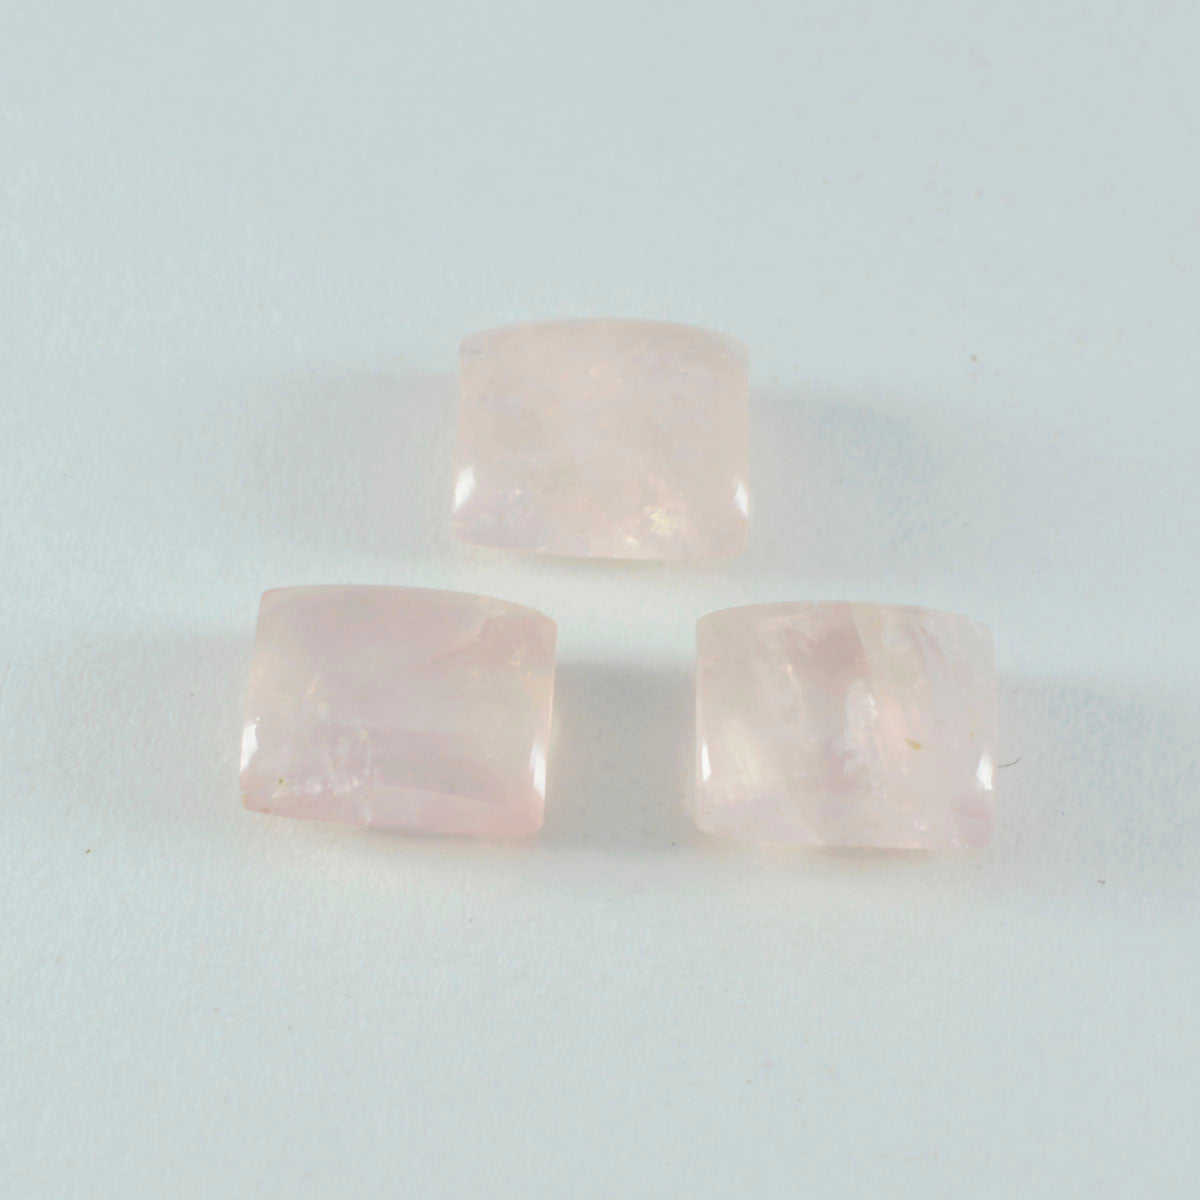 Riyogems, 1 pieza, cabujón de cuarzo rosa, 10x12mm, forma octágono, piedra de calidad fantástica